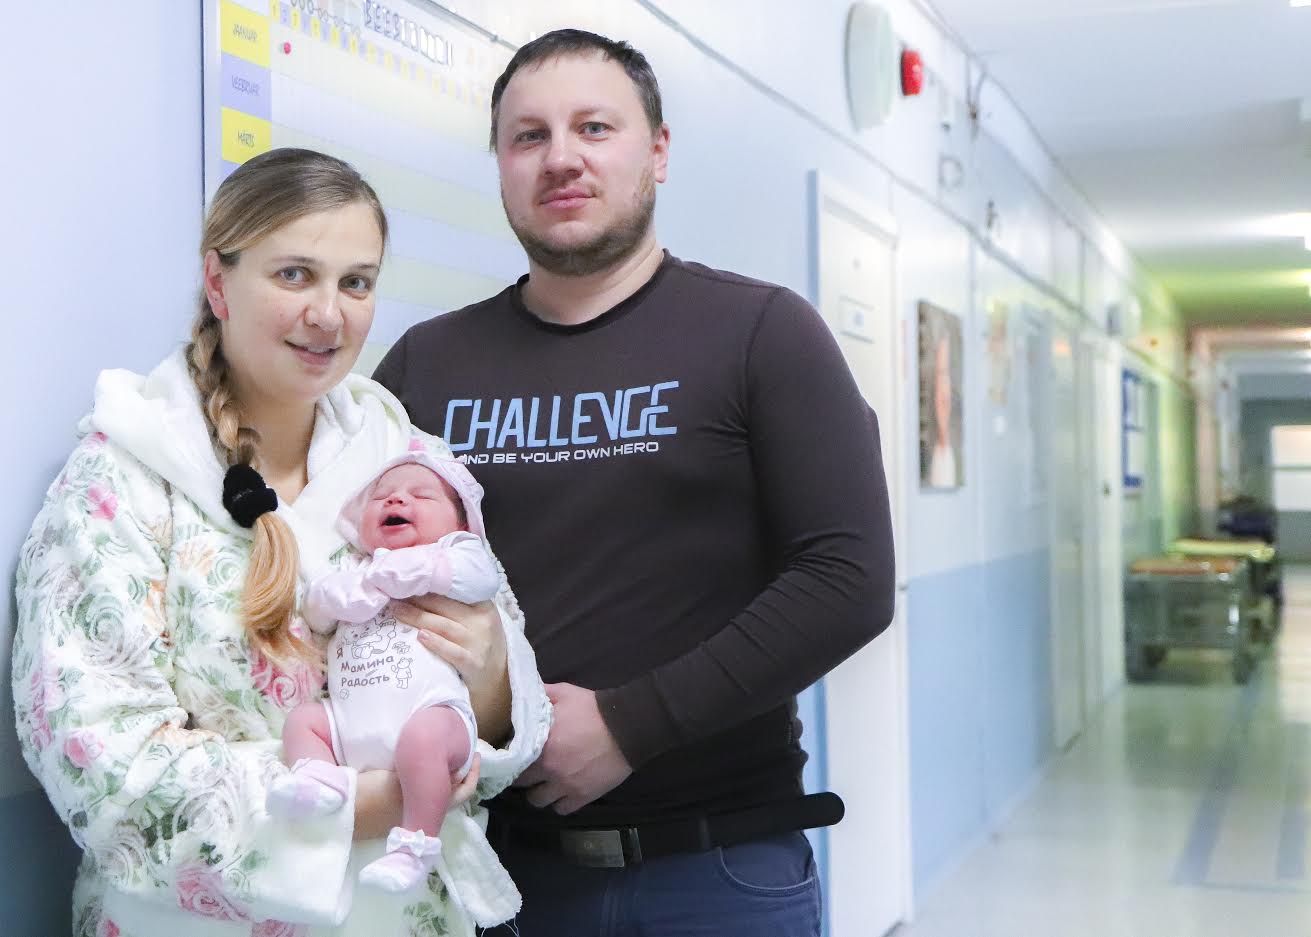 Lõuna-Eesti haigla sünnitusosakonnas olid tänavu esimesteks lapsevanemateks Lilija ja Vladimir Grigoryeva Valga linnast. Tütar Ariana on peres neljas laps ning sündis 2. jaanuari hommikul kell 7. Foto: AIGAR NAGEL